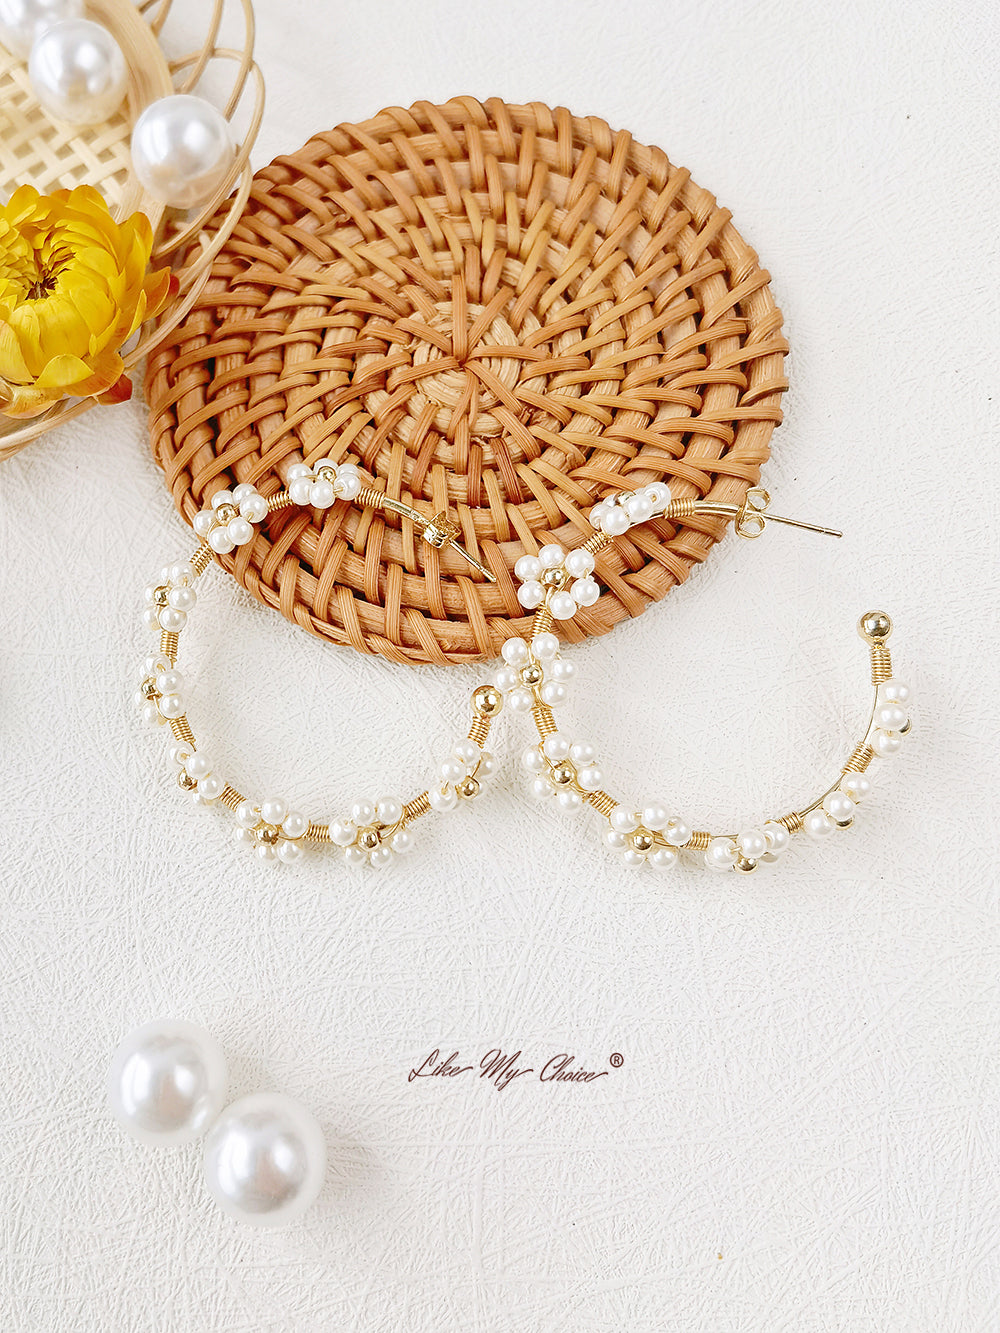 Muses de perles fantaisistes : boucles d'oreilles Cloudy Pearl d'inspiration bohème